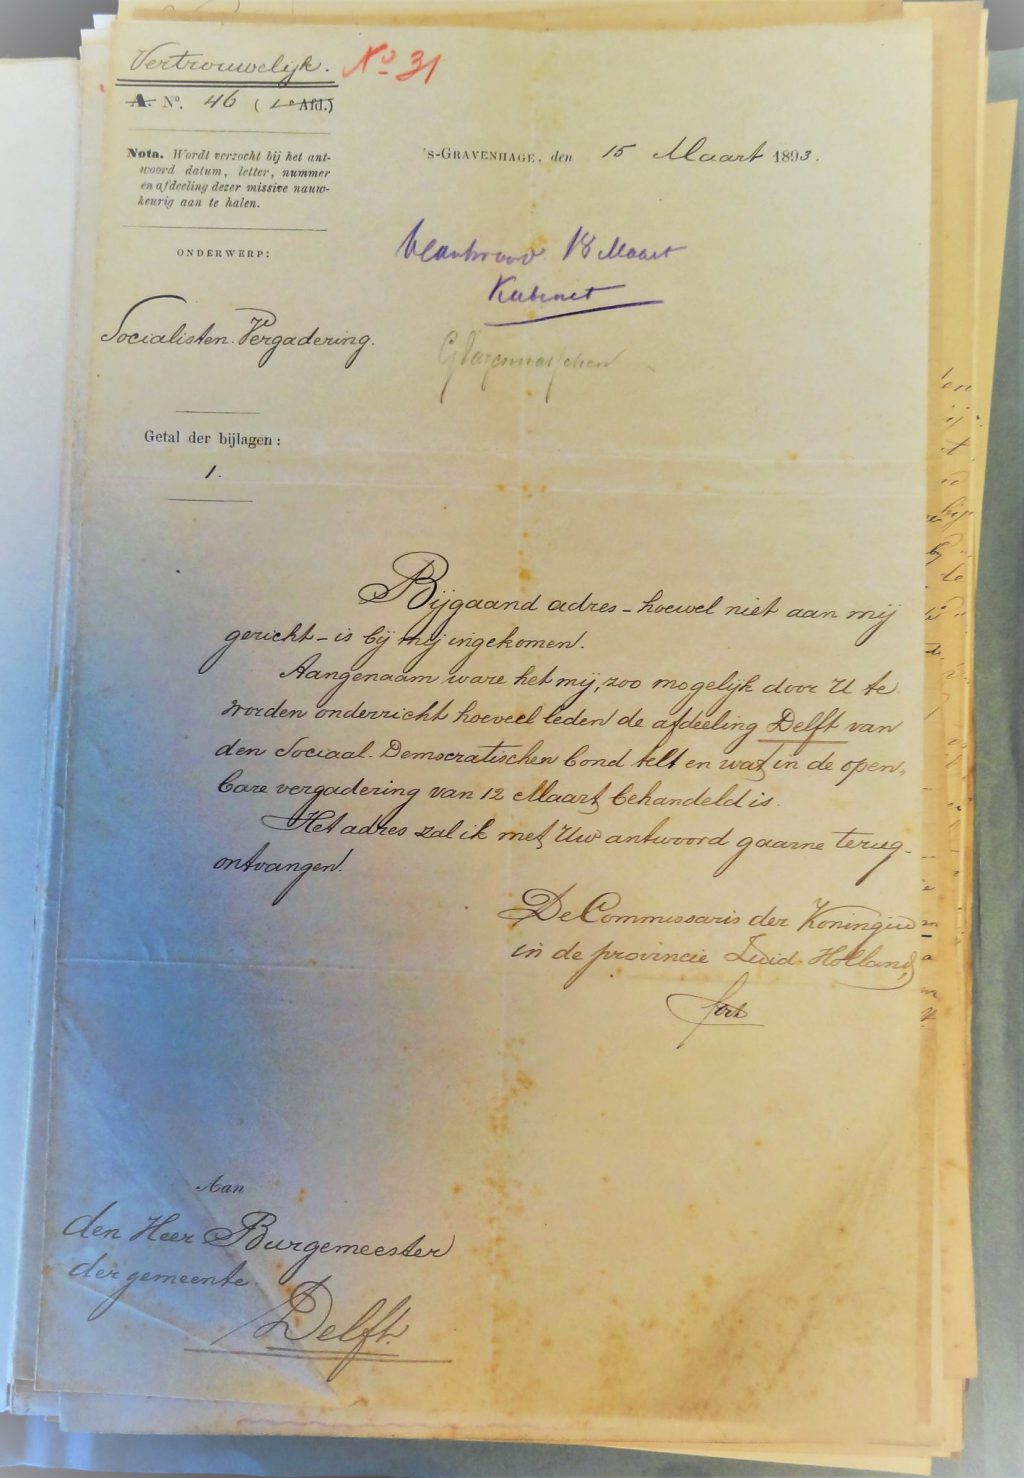 Ingekomen brief bij de burgemeester, 15-3-1893 (Archief 594, inv.nr 74)